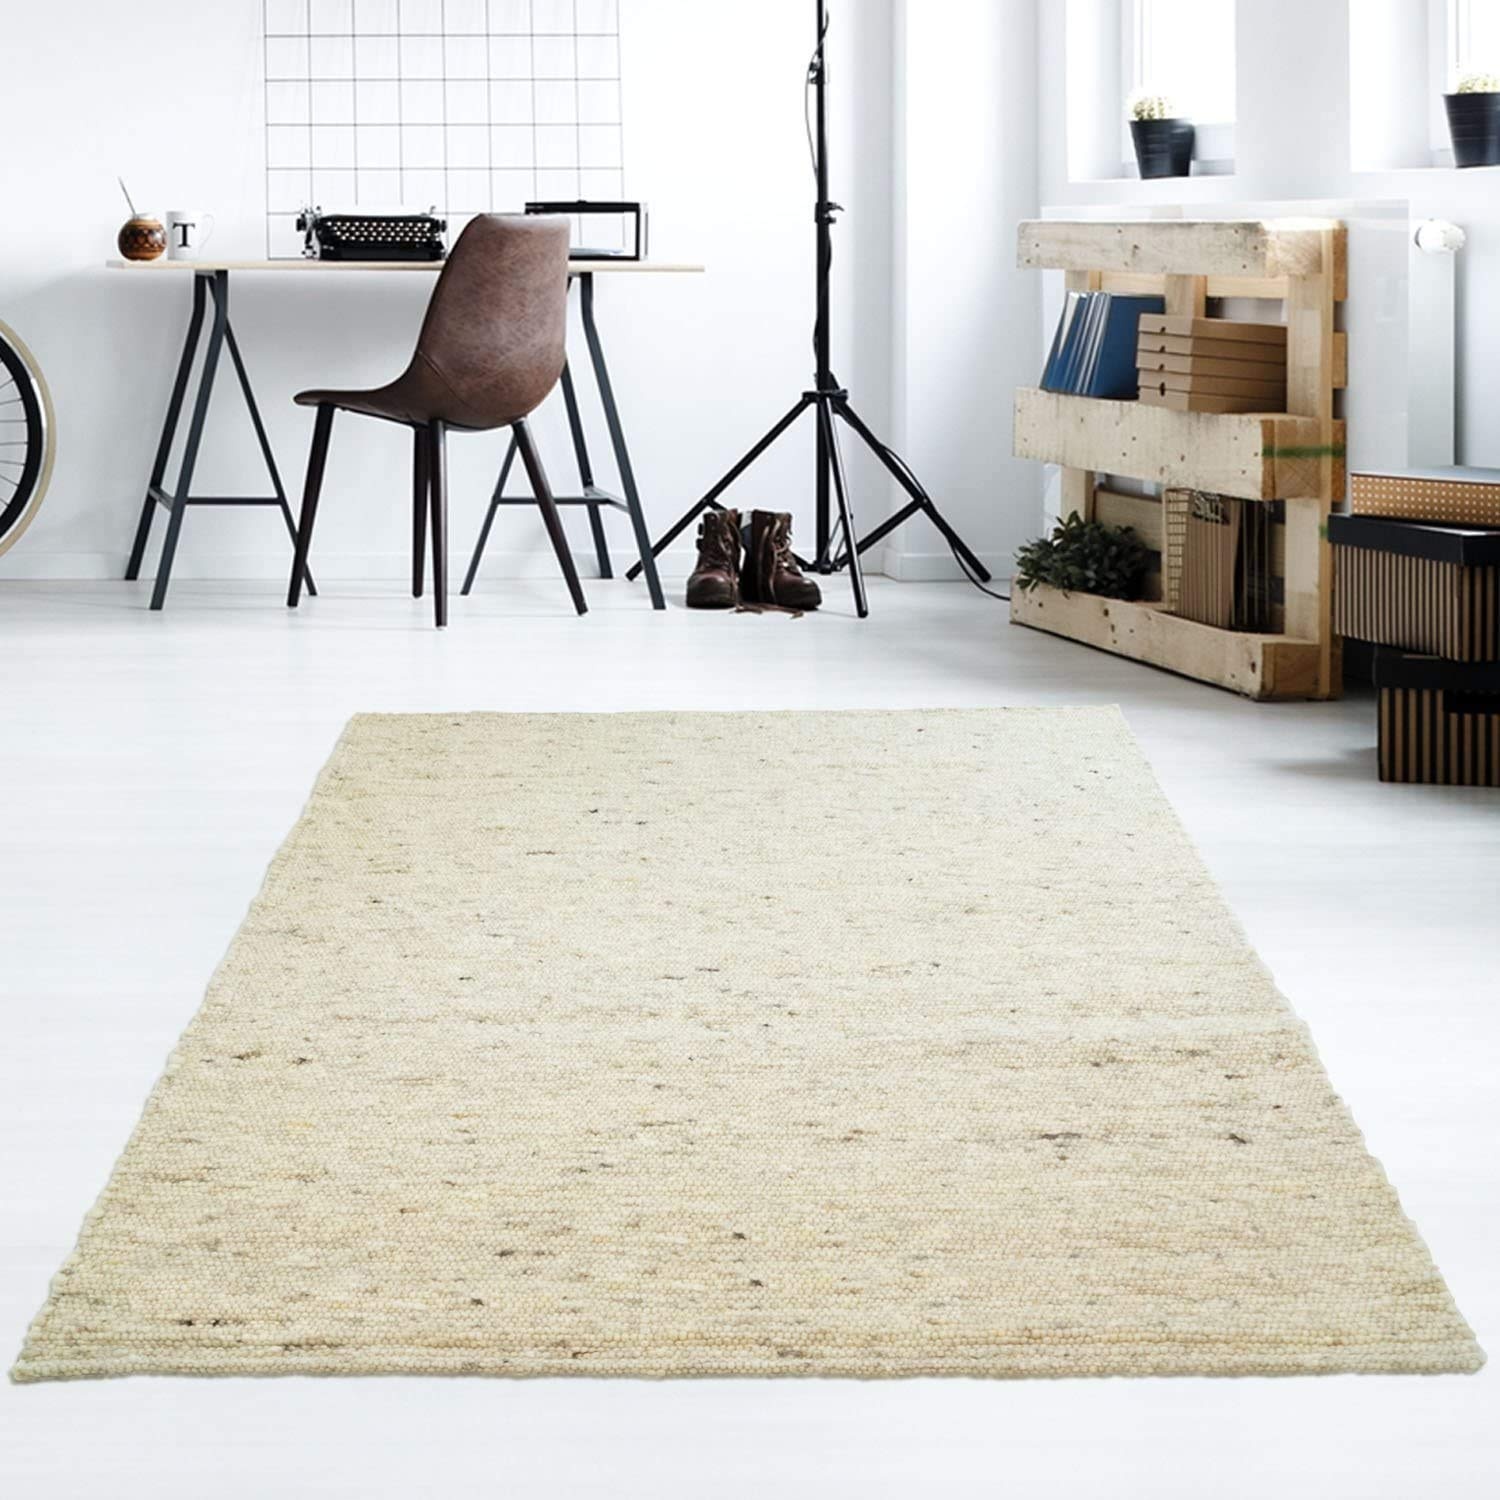 Taracarpet Moderner Handweb Teppich Alpina handgewebt aus Schurwolle für Wohnzimmer, Esszimmer, Schlafzimmer und die Küche geeignet (130 x 190 cm, 60 Beige meliert)